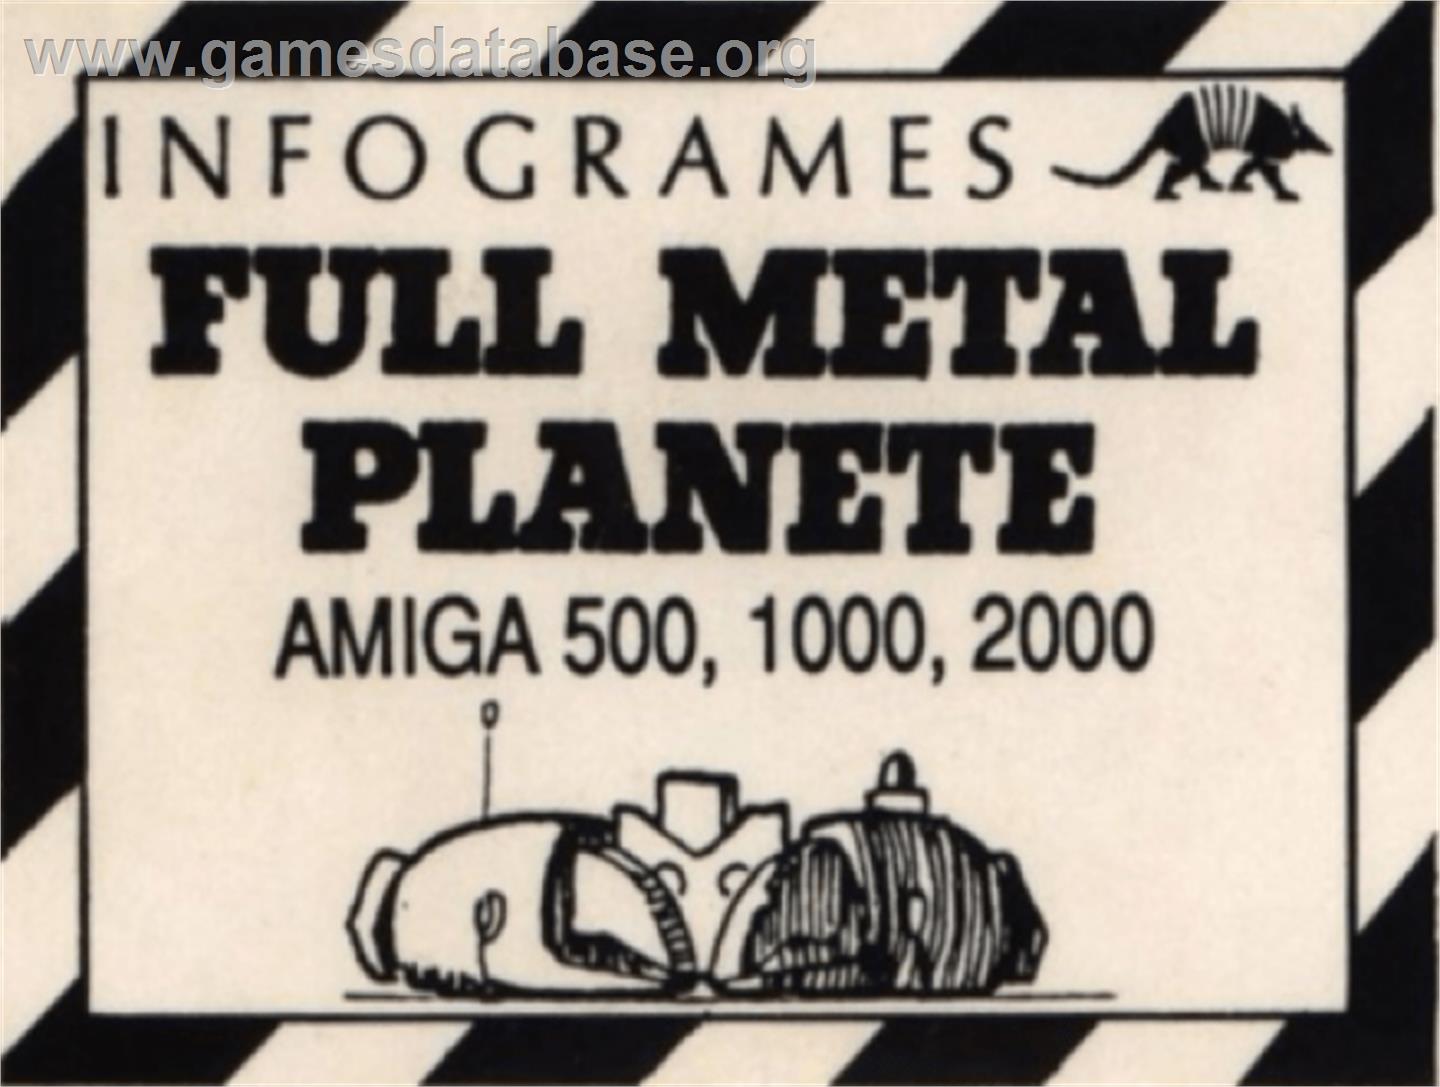 Full Metal Planete - Commodore Amiga - Artwork - Cartridge Top